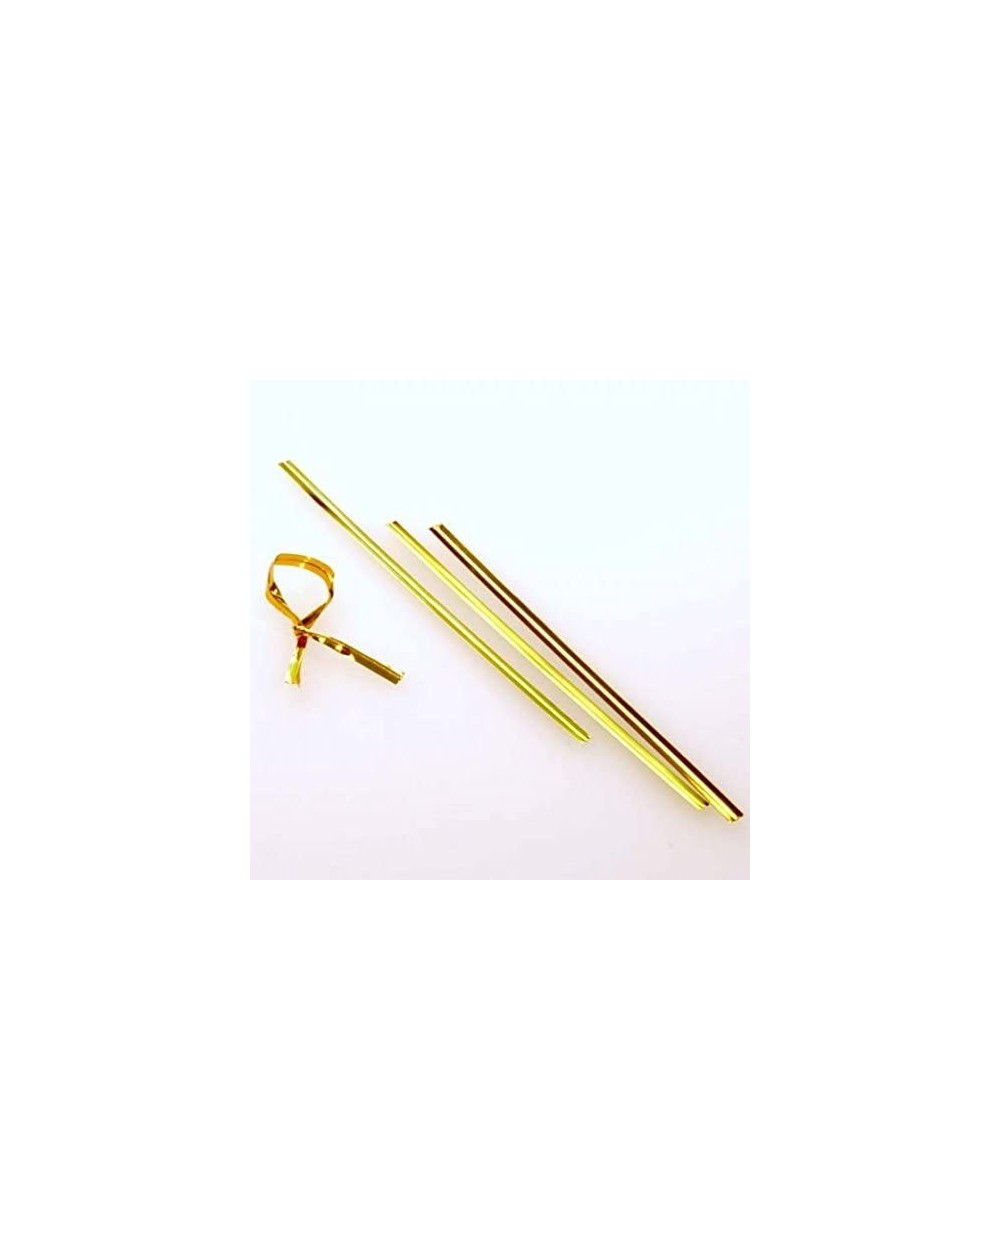 Favors Metallic Plastic Twist Tie (1000 Pack) (Standard (4")- Gold) - Gold - CQ185K5N9OD $7.08